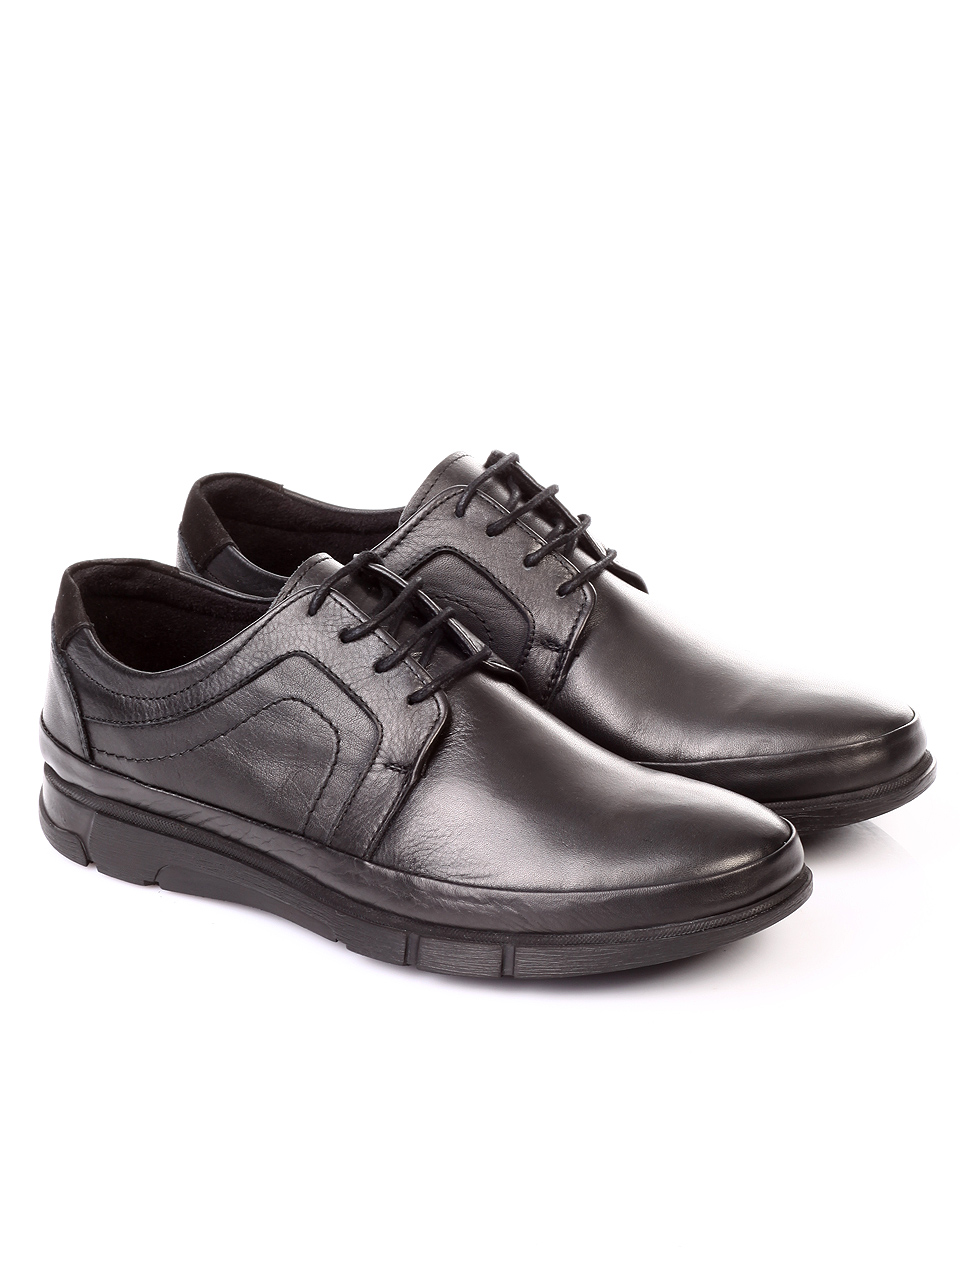 Ежедневни мъжки обувки от естествена кожа 7AT-181109 black